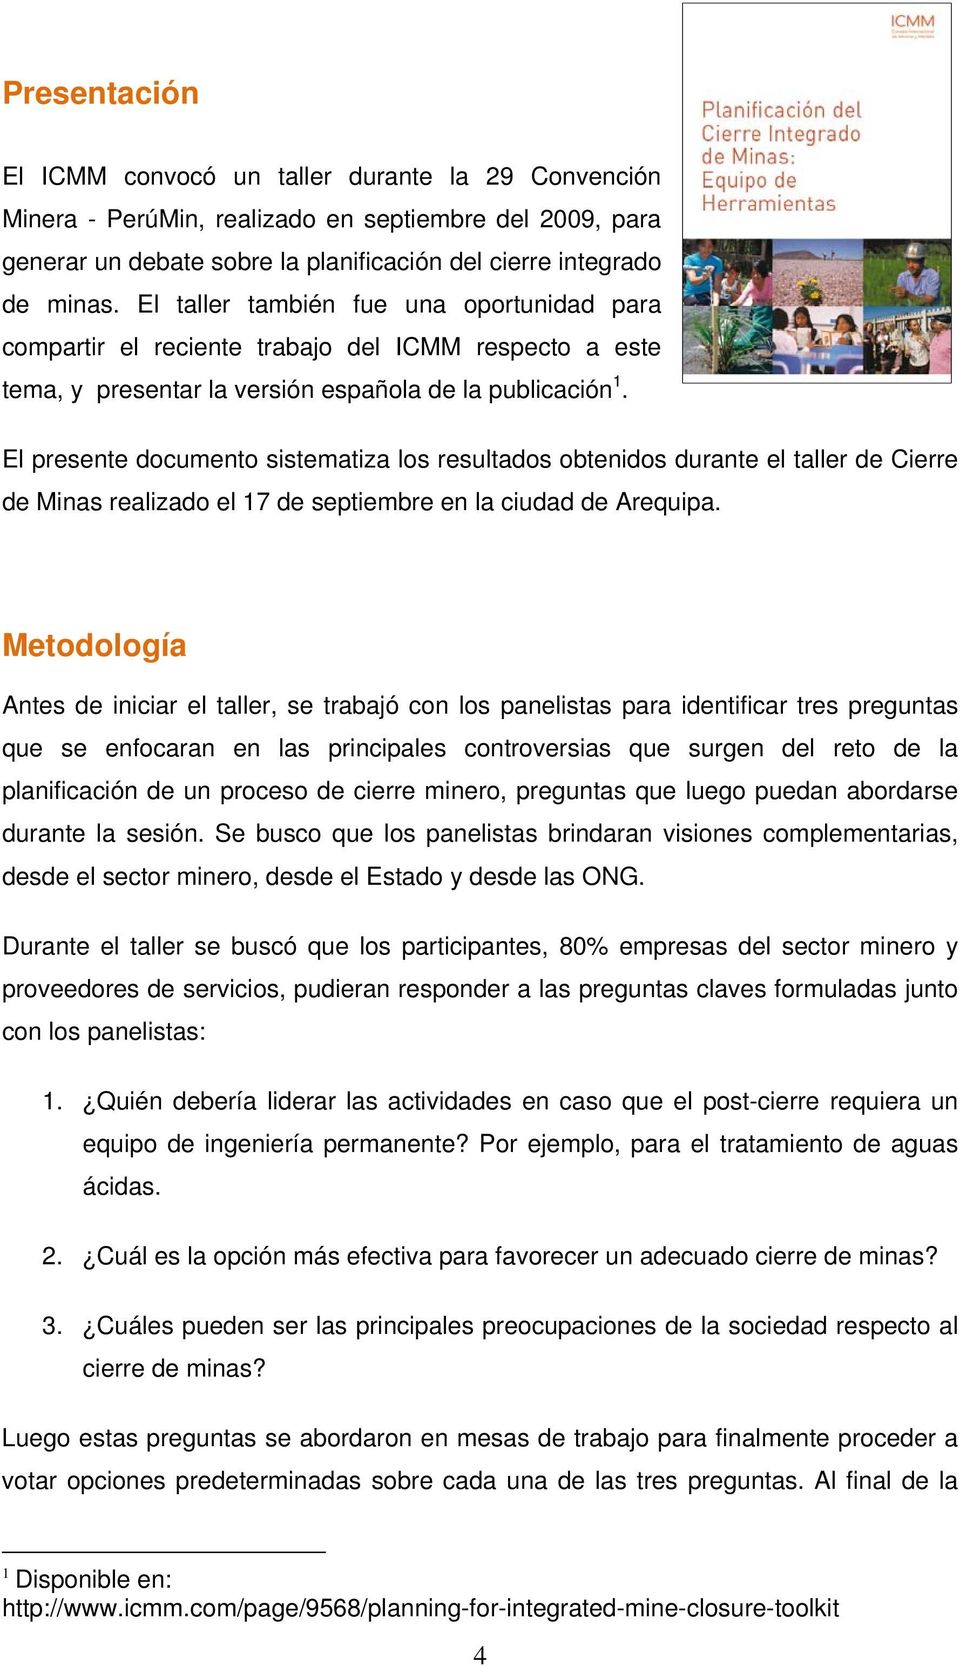 El presente documento sistematiza los resultados obtenidos durante el taller de Cierre de Minas realizado el 17 de septiembre en la ciudad de Arequipa.